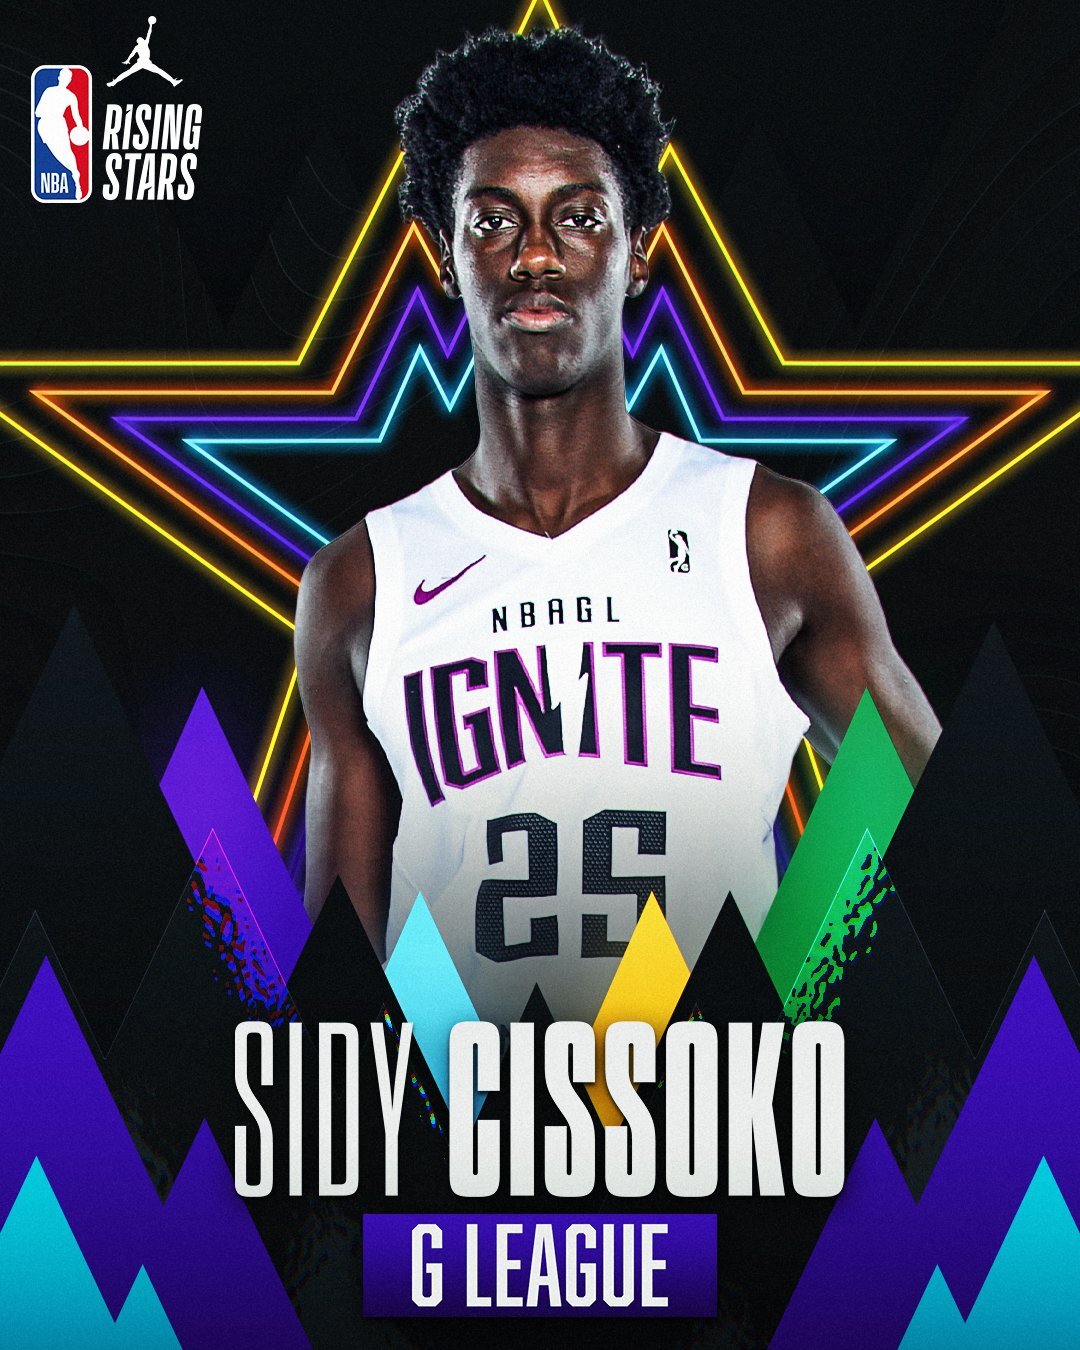 Sidy Cissoko estará presente en el Jordan Rising Stars de la NBA